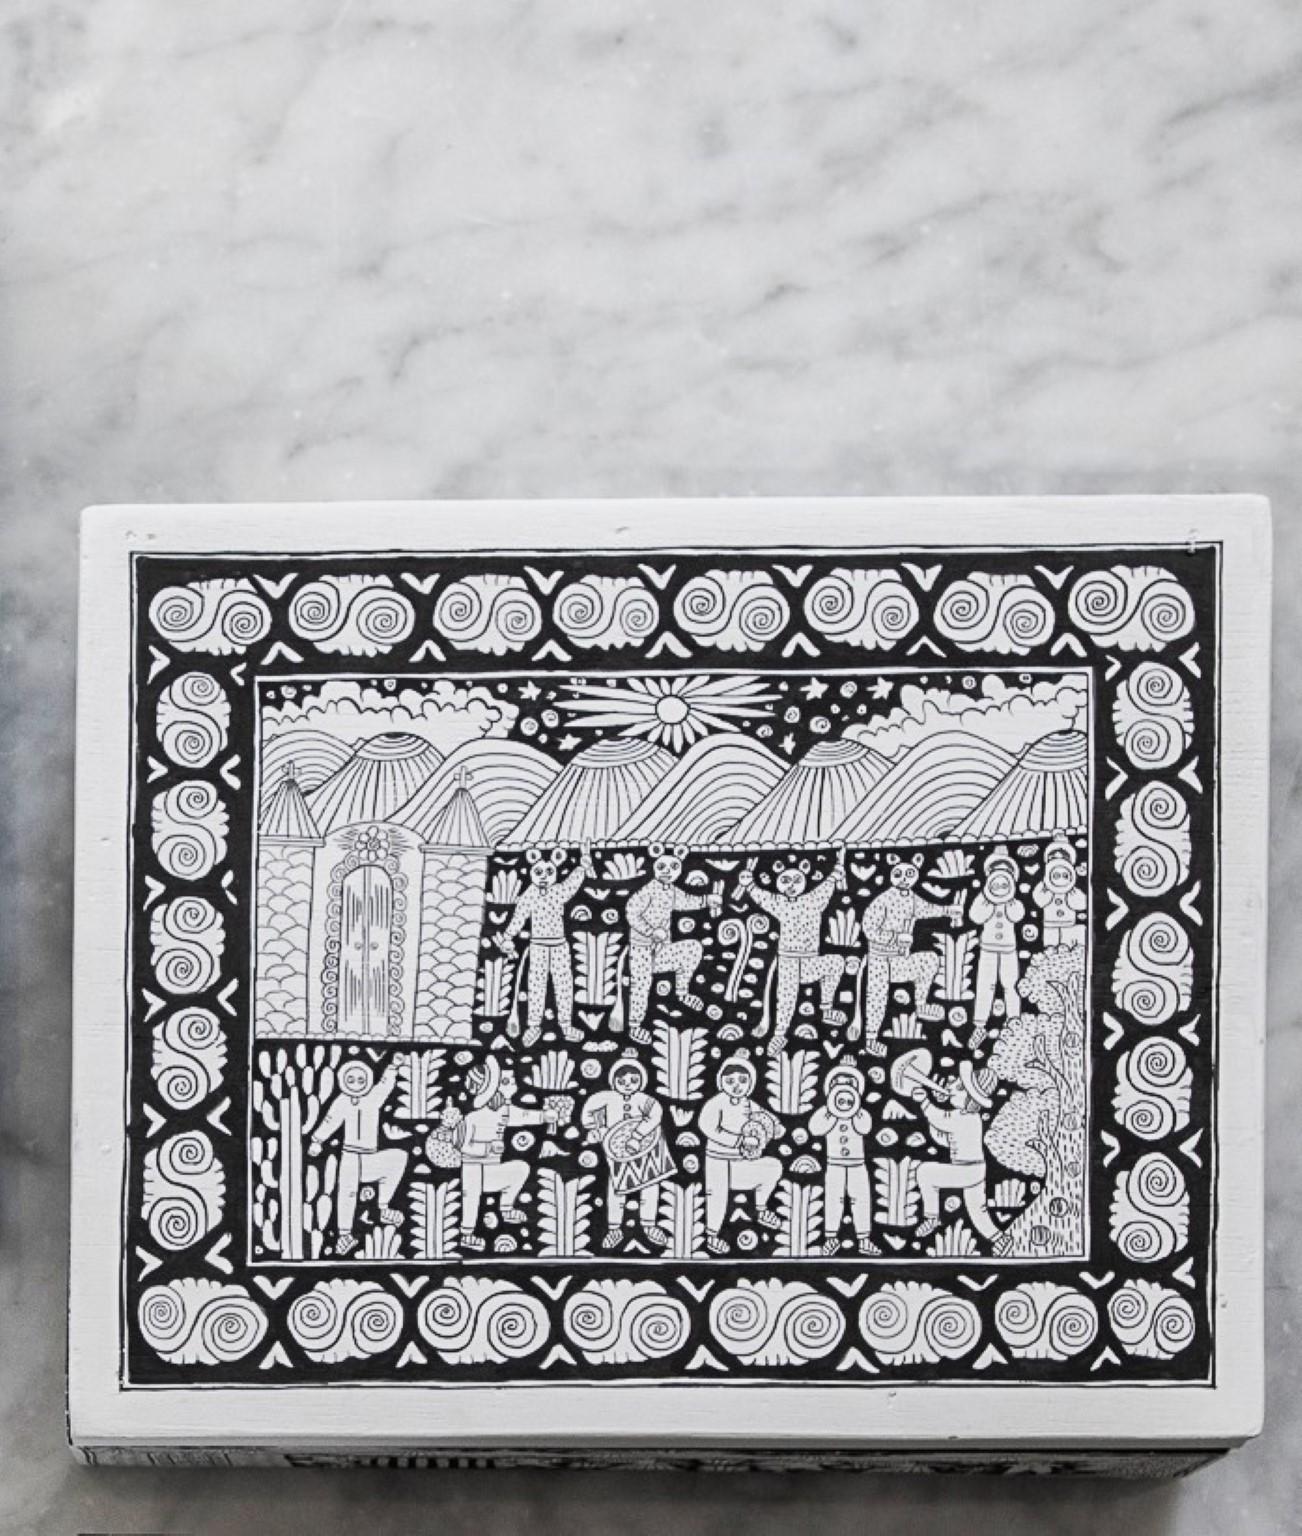 Xalitla-Schachtel von Onora
Abmessungen: 25 x 20 cm
Materialien: Freihand bemaltes Holz

Handbemalte Teedose aus Xalitla, Guerrero. Die auf jedem Stück gemalten Szenen zeigen das alltägliche Leben in dieser Region von Guerrero, von der